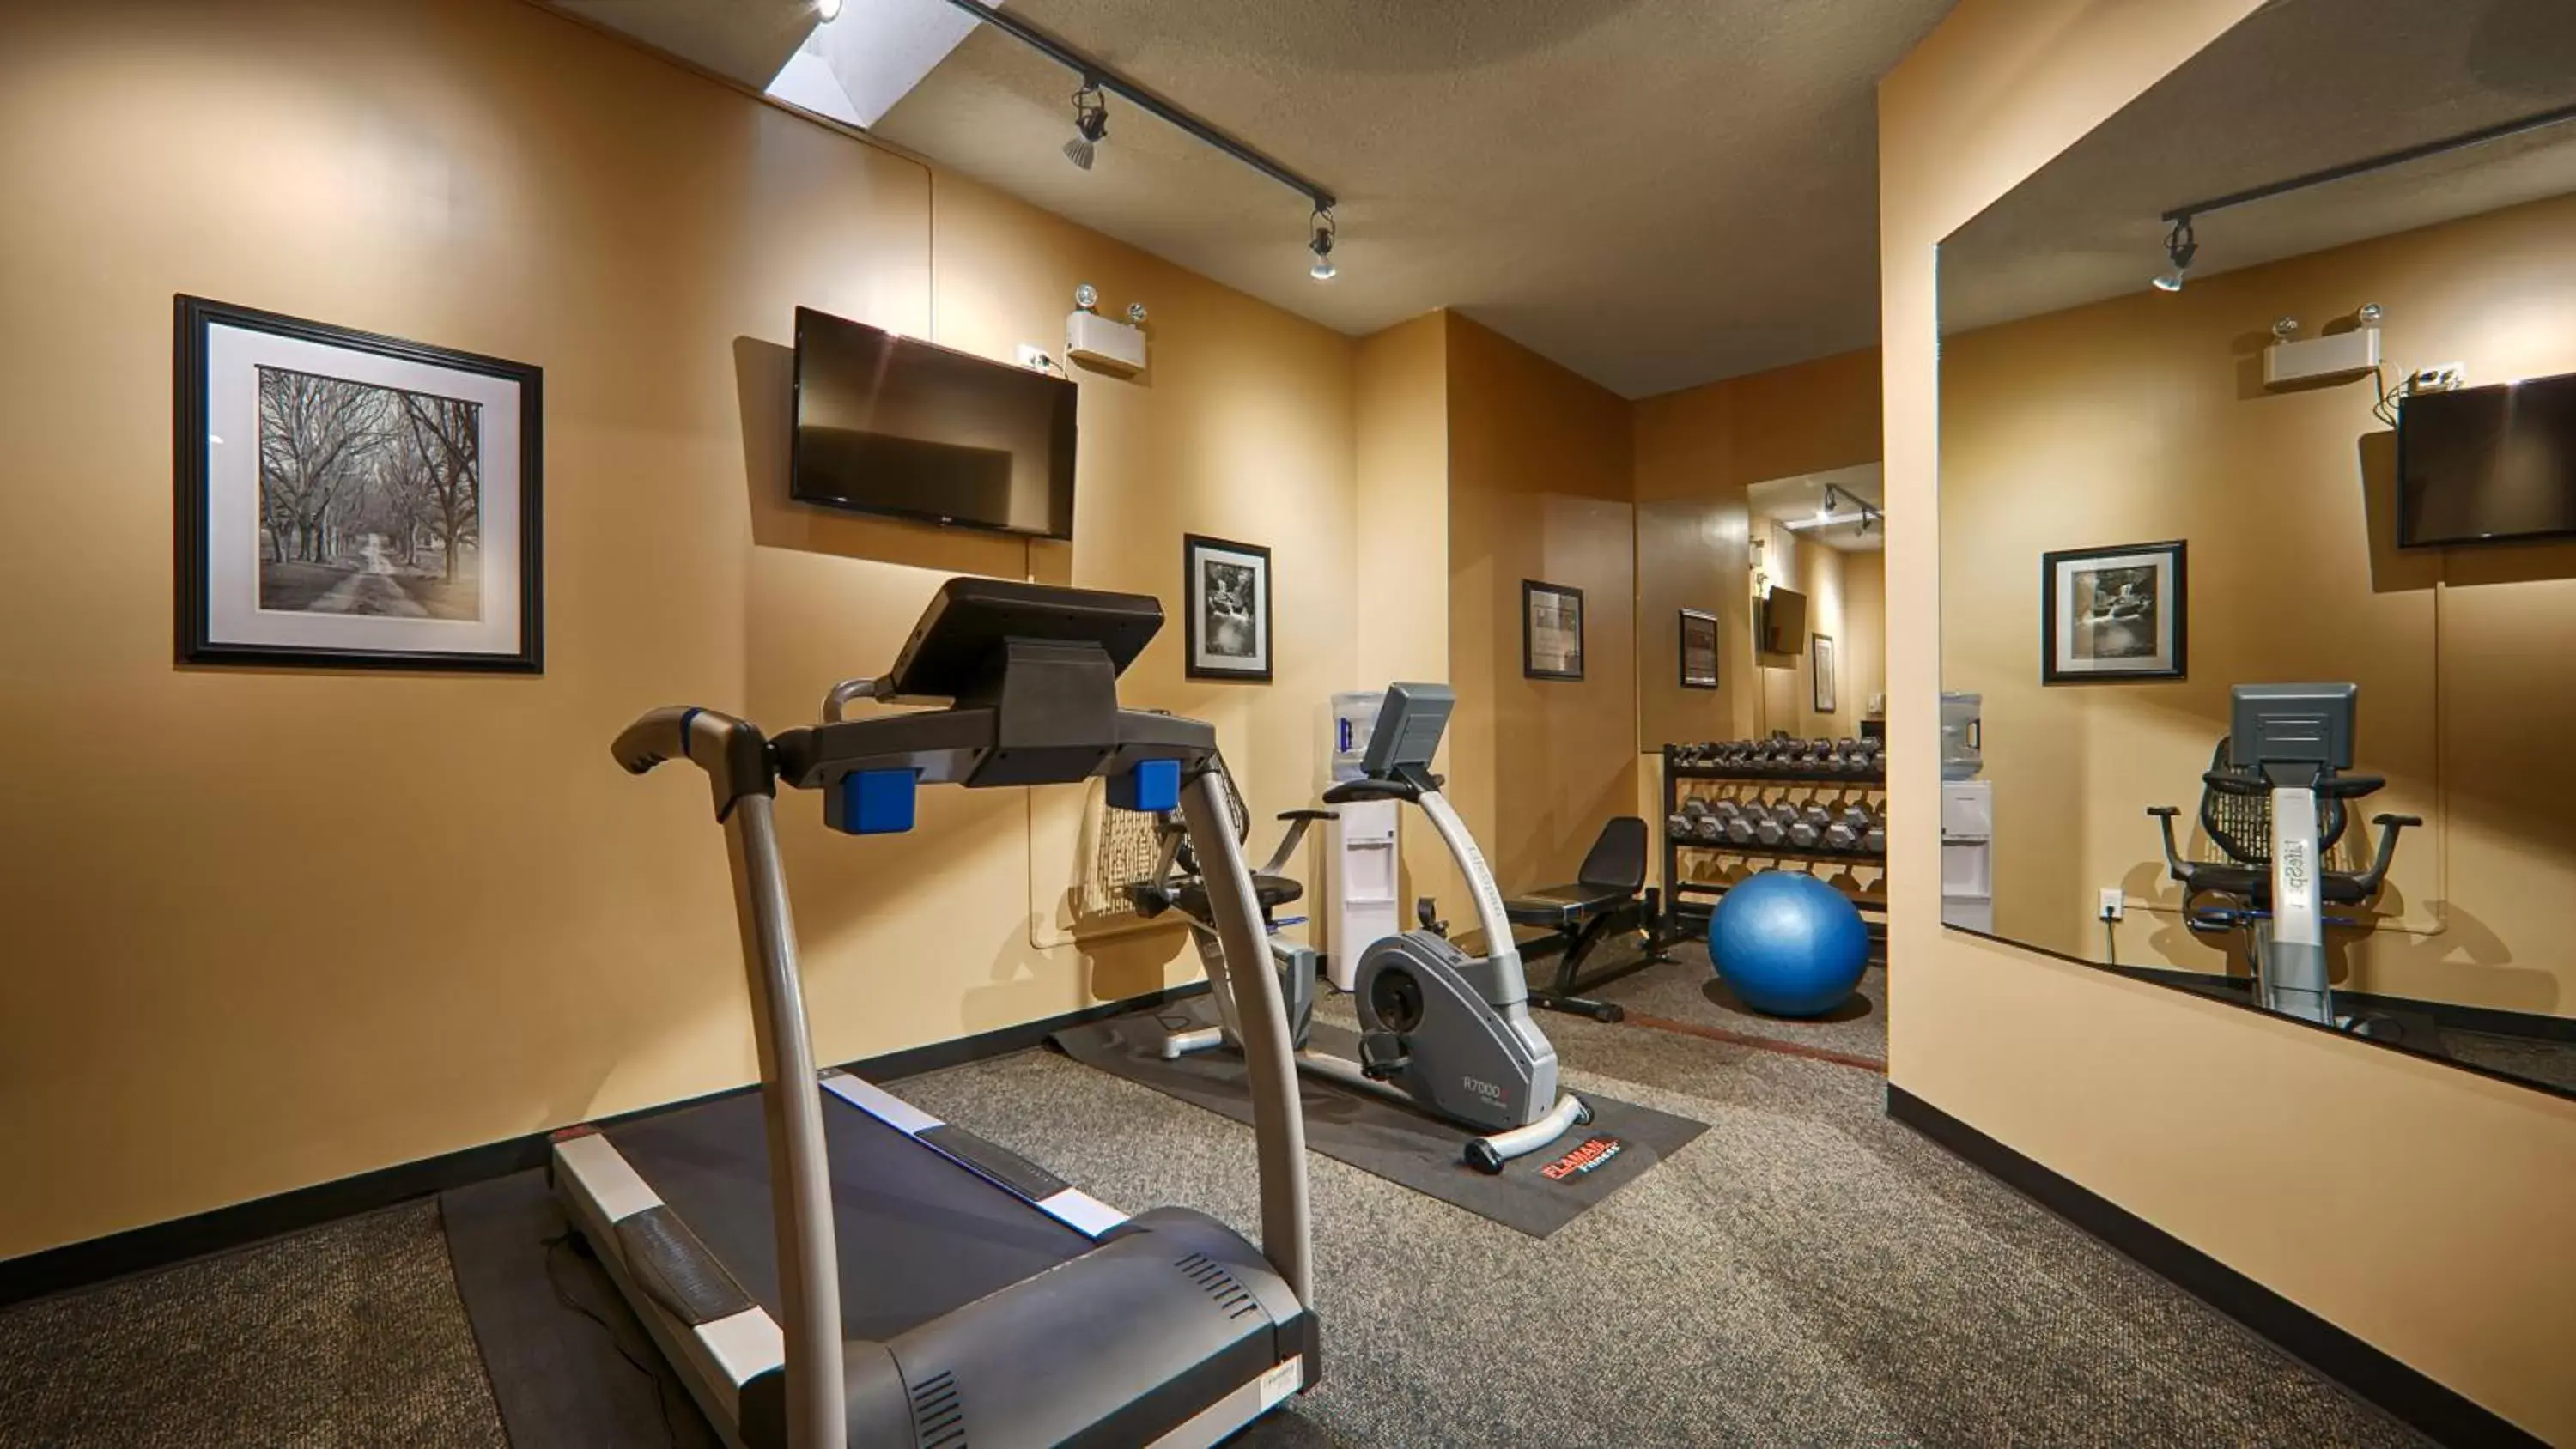 Fitness centre/facilities, Fitness Center/Facilities in Prestige Vernon Lodge